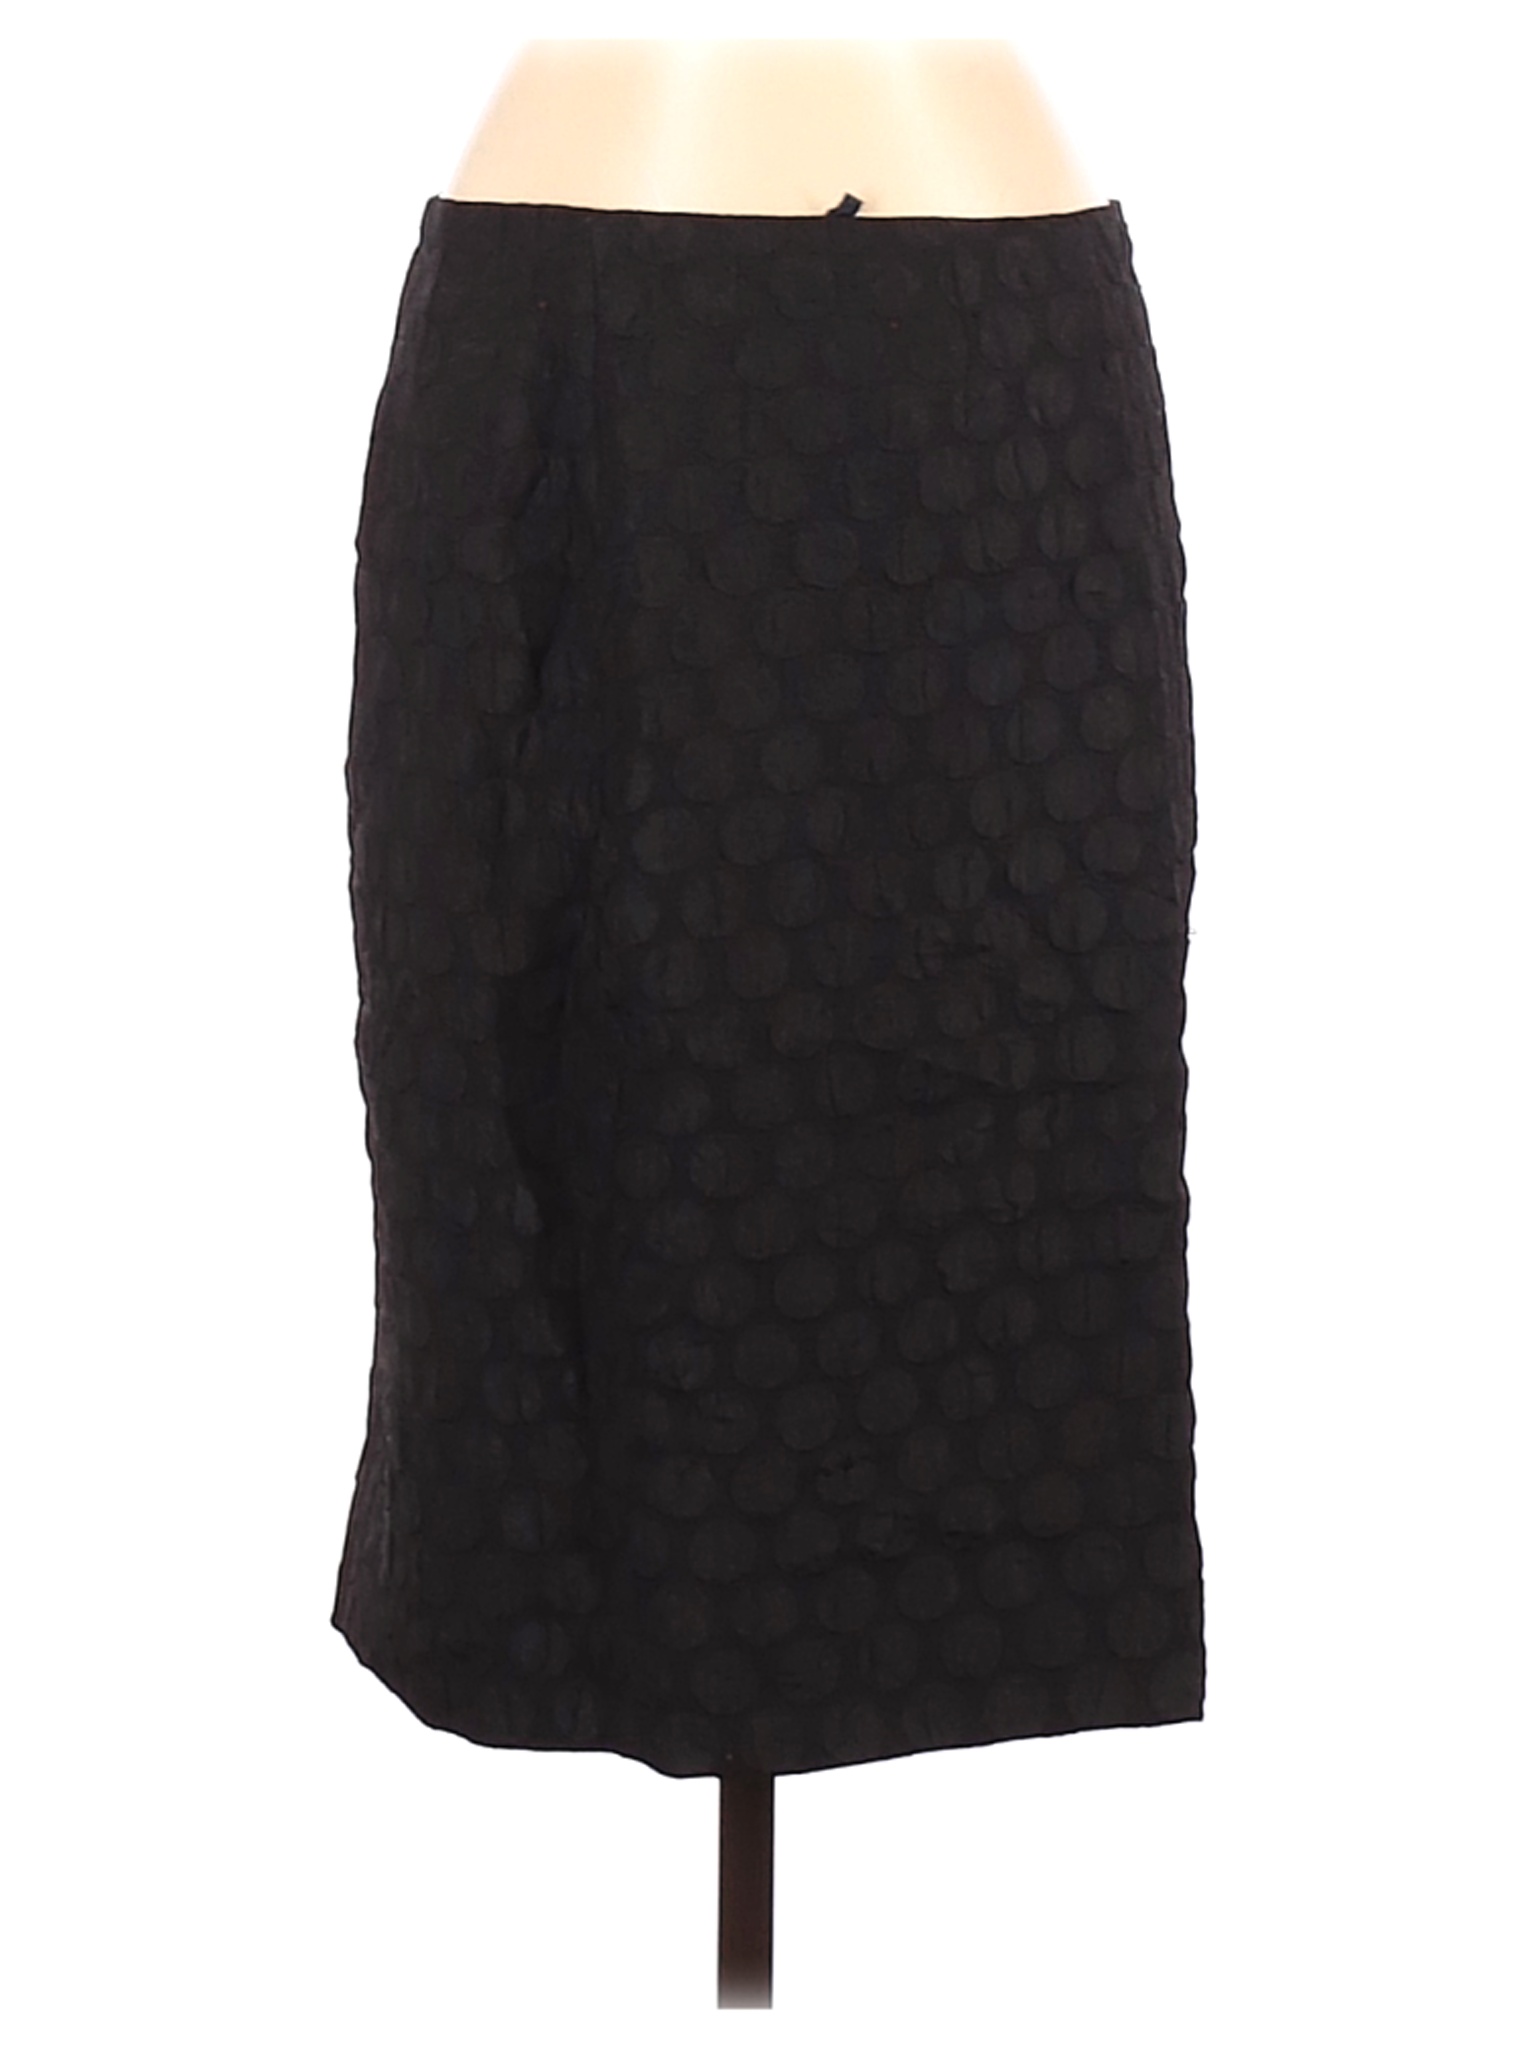 Maeve Women Black Casual Skirt 2 | eBay